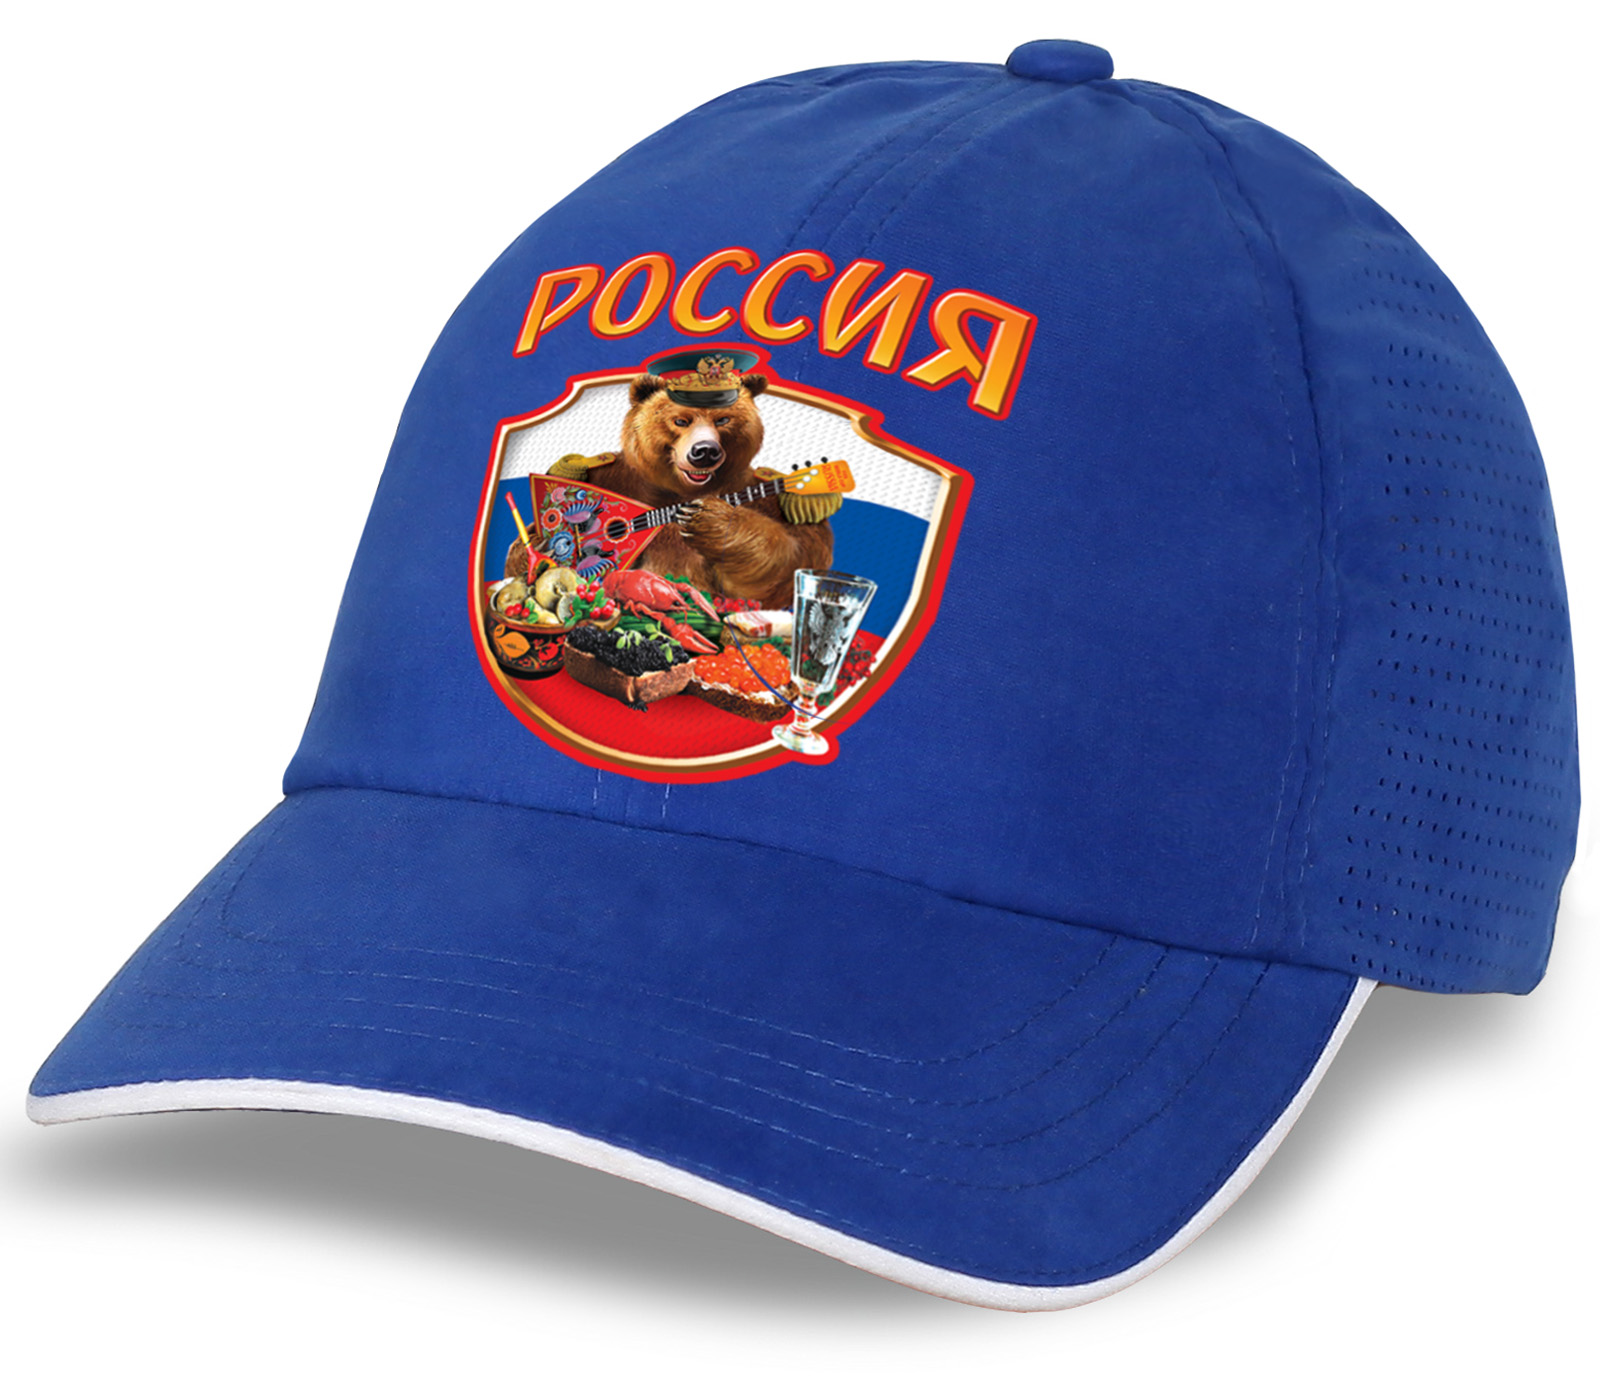 Классная кепка с медведем "Россия" - ограниченная серия, успей заказать! ОСТАТКИ СЛАДКИ!!!! №тр705